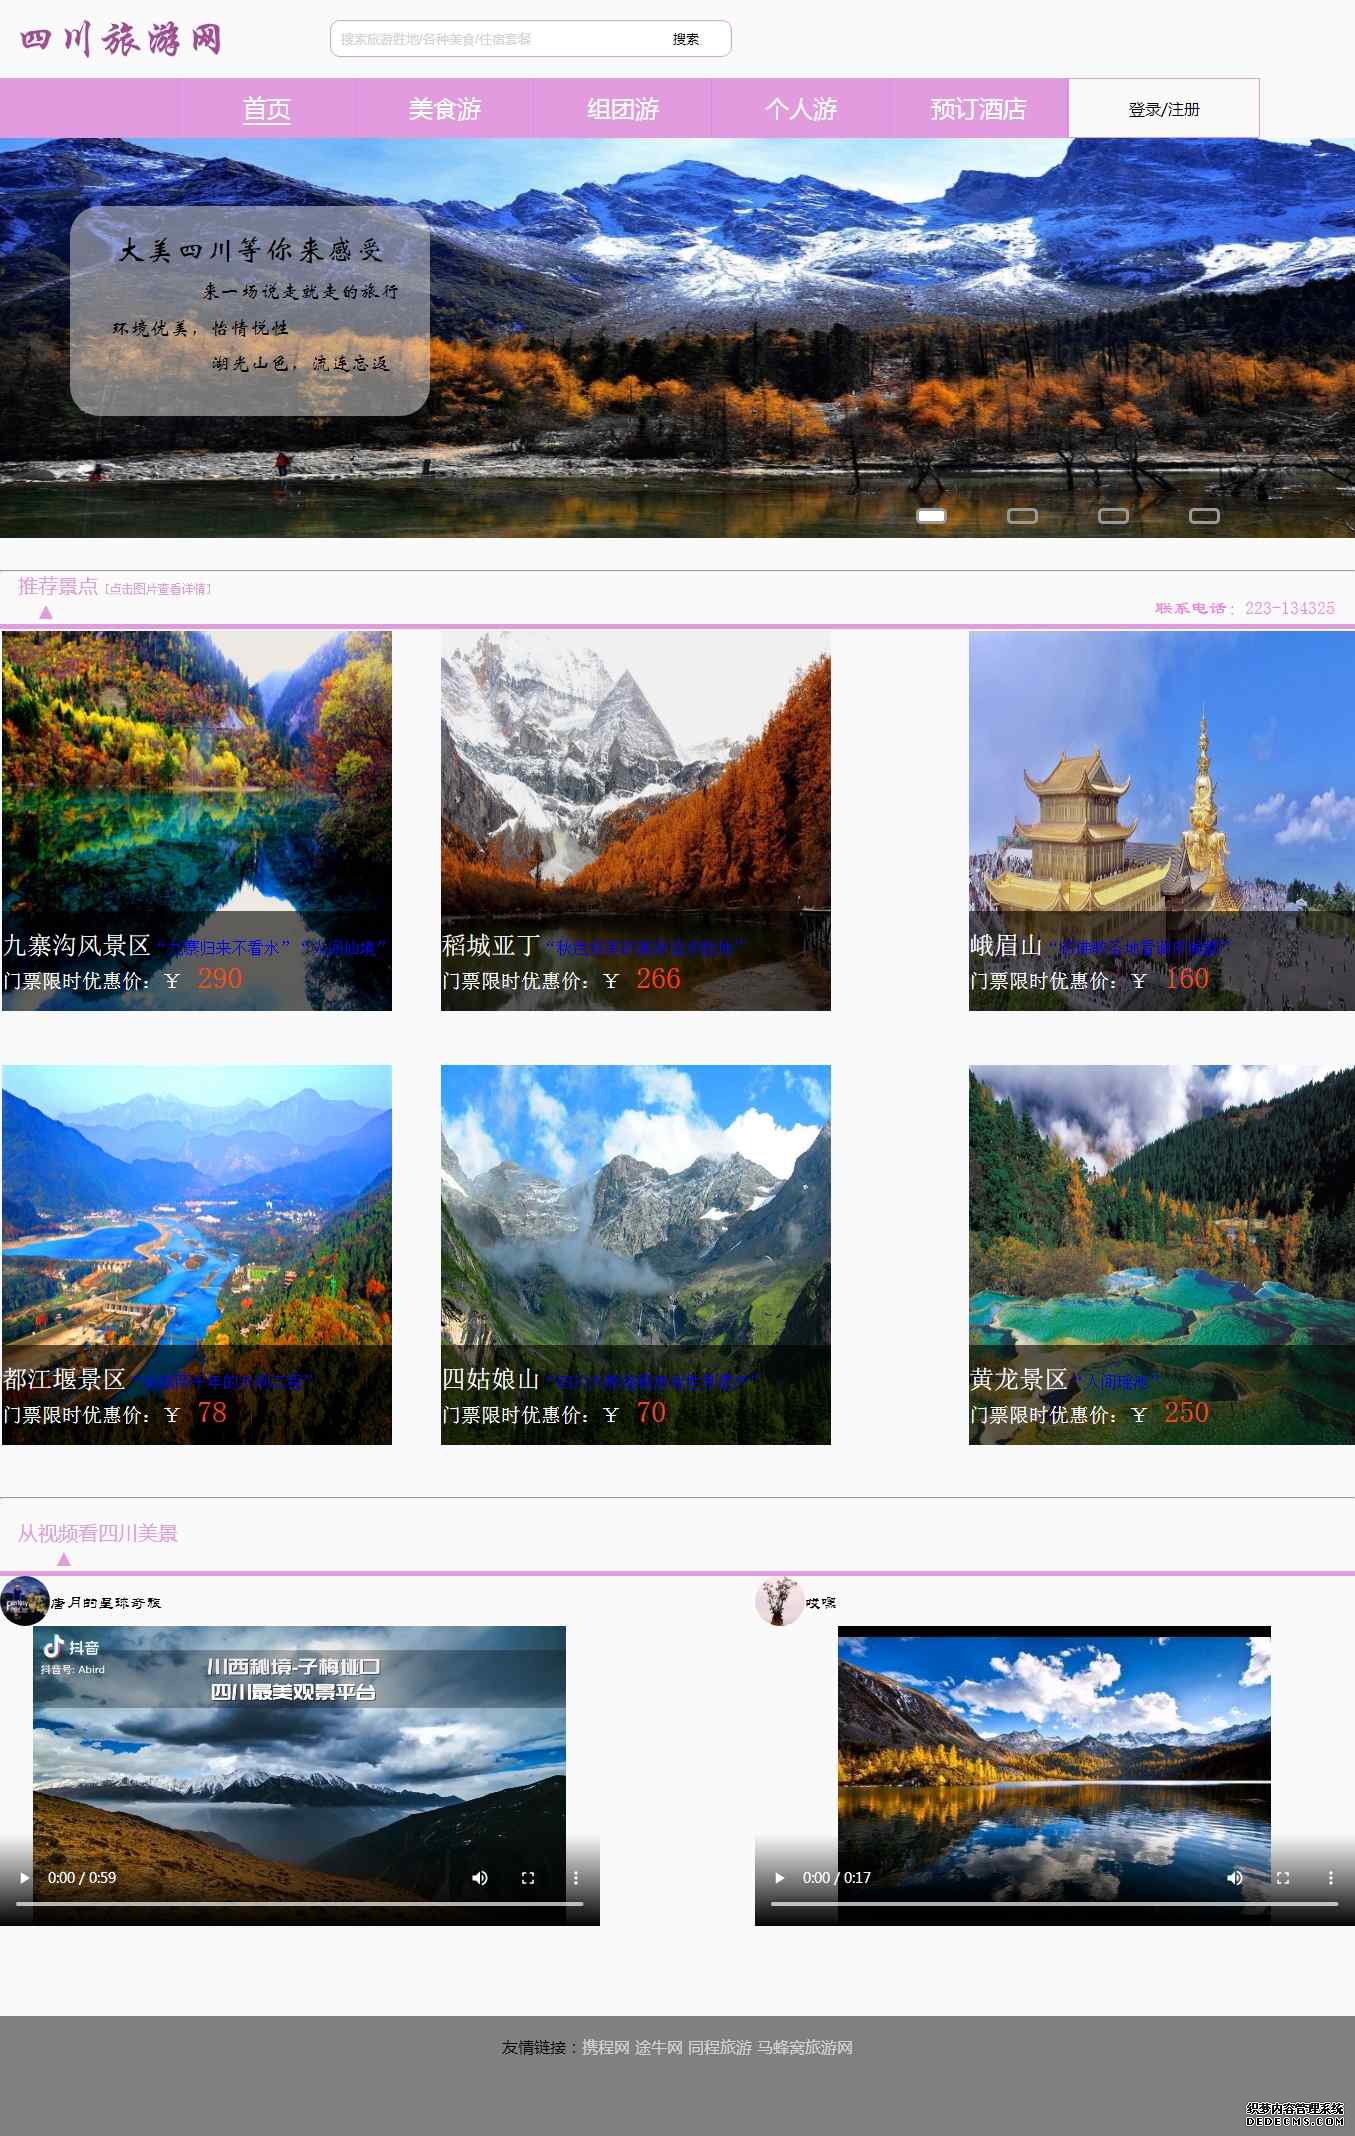 编号：1067 四川旅游网站 11个页面  有视频 图片轮播 有登录注册表单 50元  CSS布局